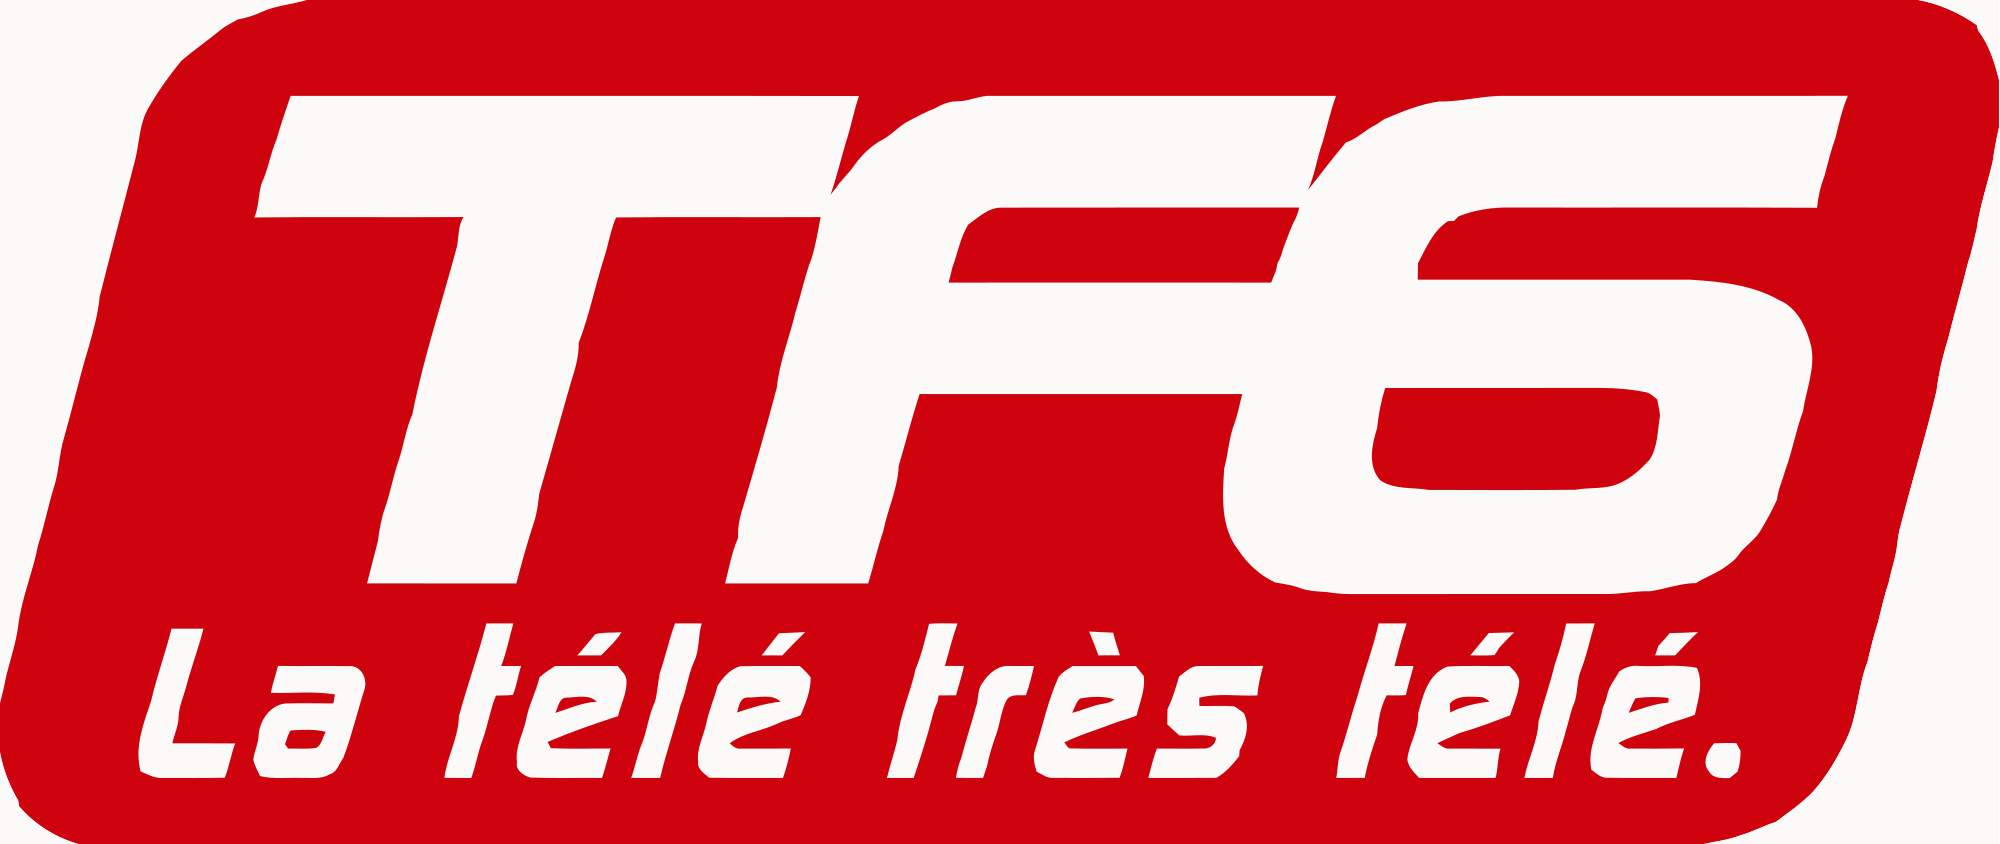 El canal francés TF6 cesará su emision a finales de año